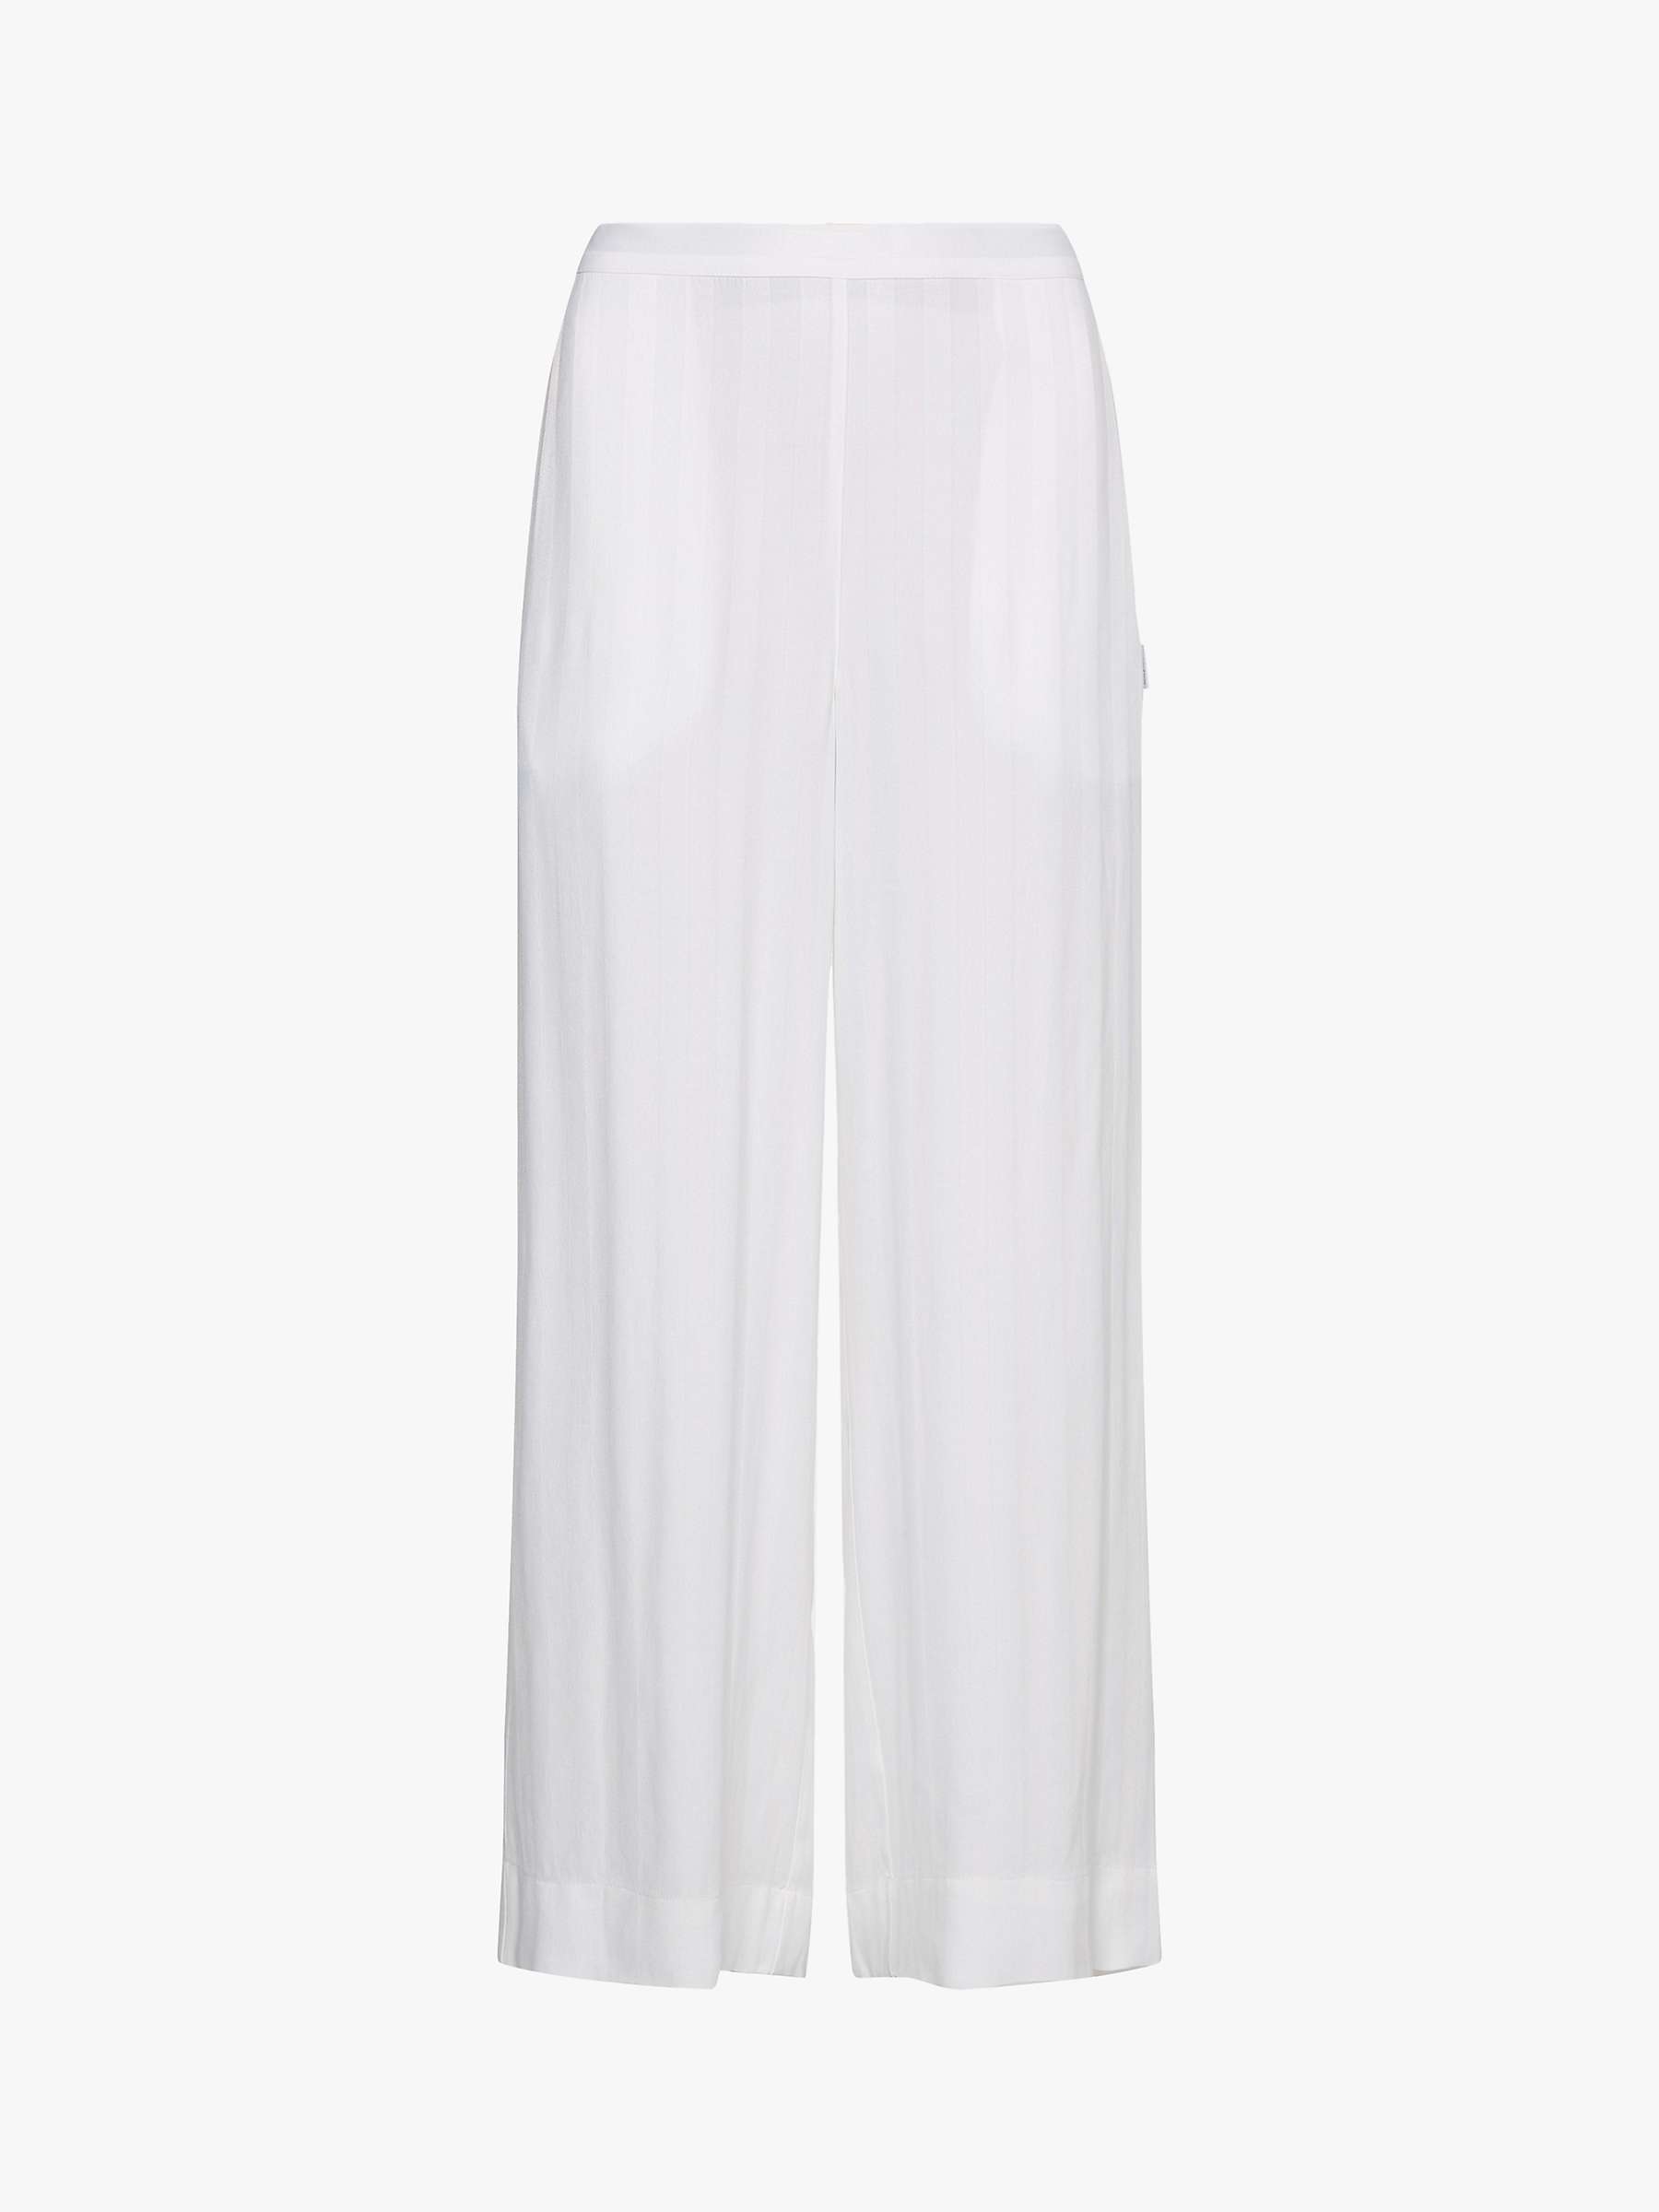 Calvin Klein Straight Leg Woven Pyjama Bottoms, White at John Lewis ...